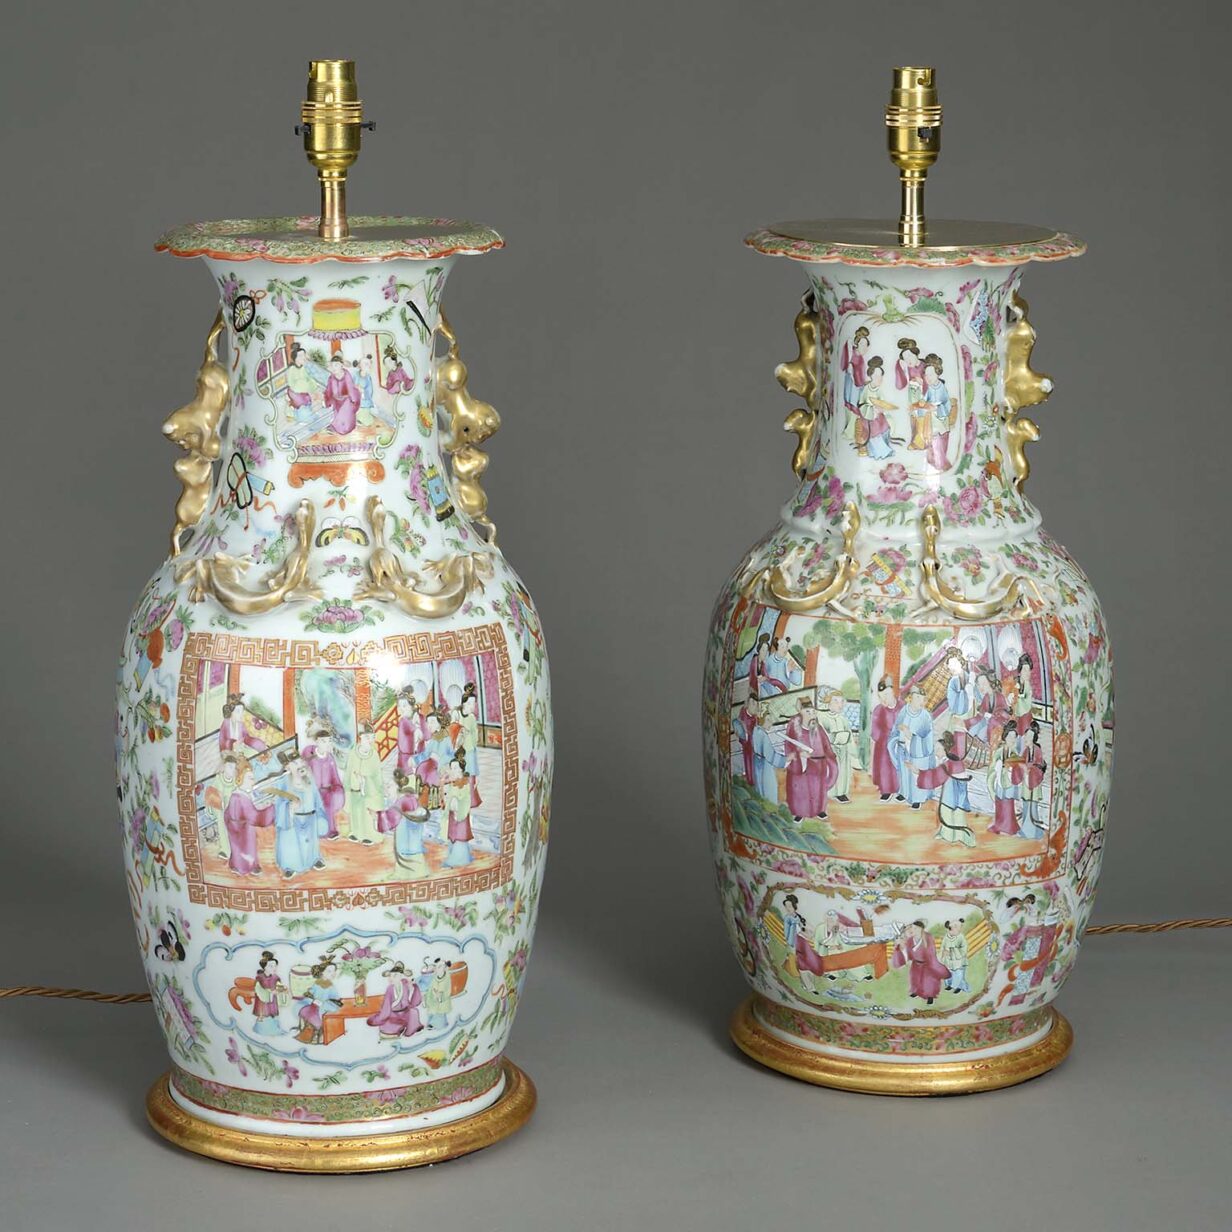 Pair of canton porcelain vase lamps